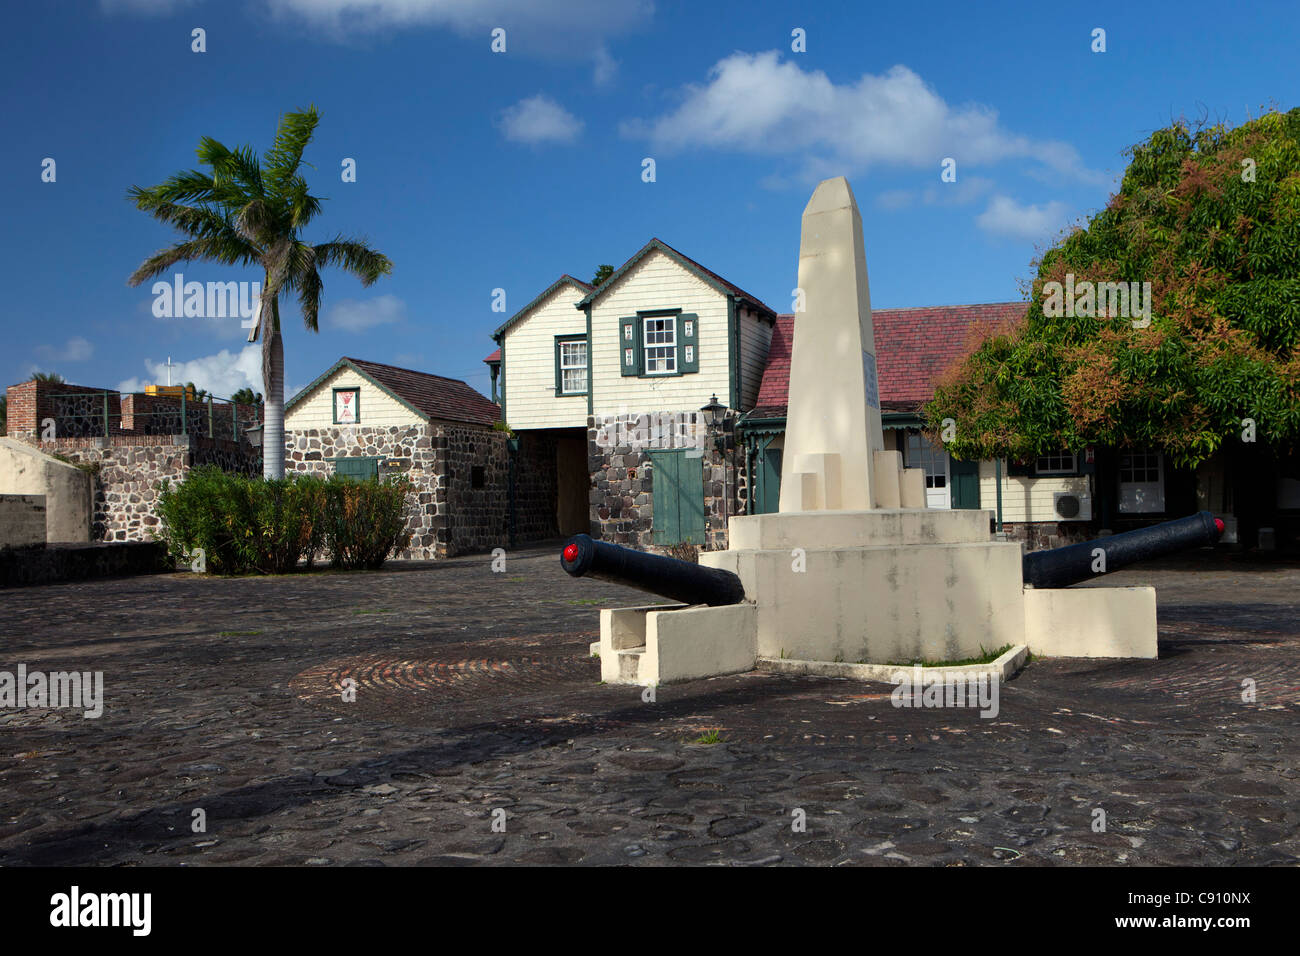 Les Pays-Bas, Oranjestad, Saint-Eustache, île des Antilles néerlandaises. Fort Oranje, construit en 1629. Banque D'Images